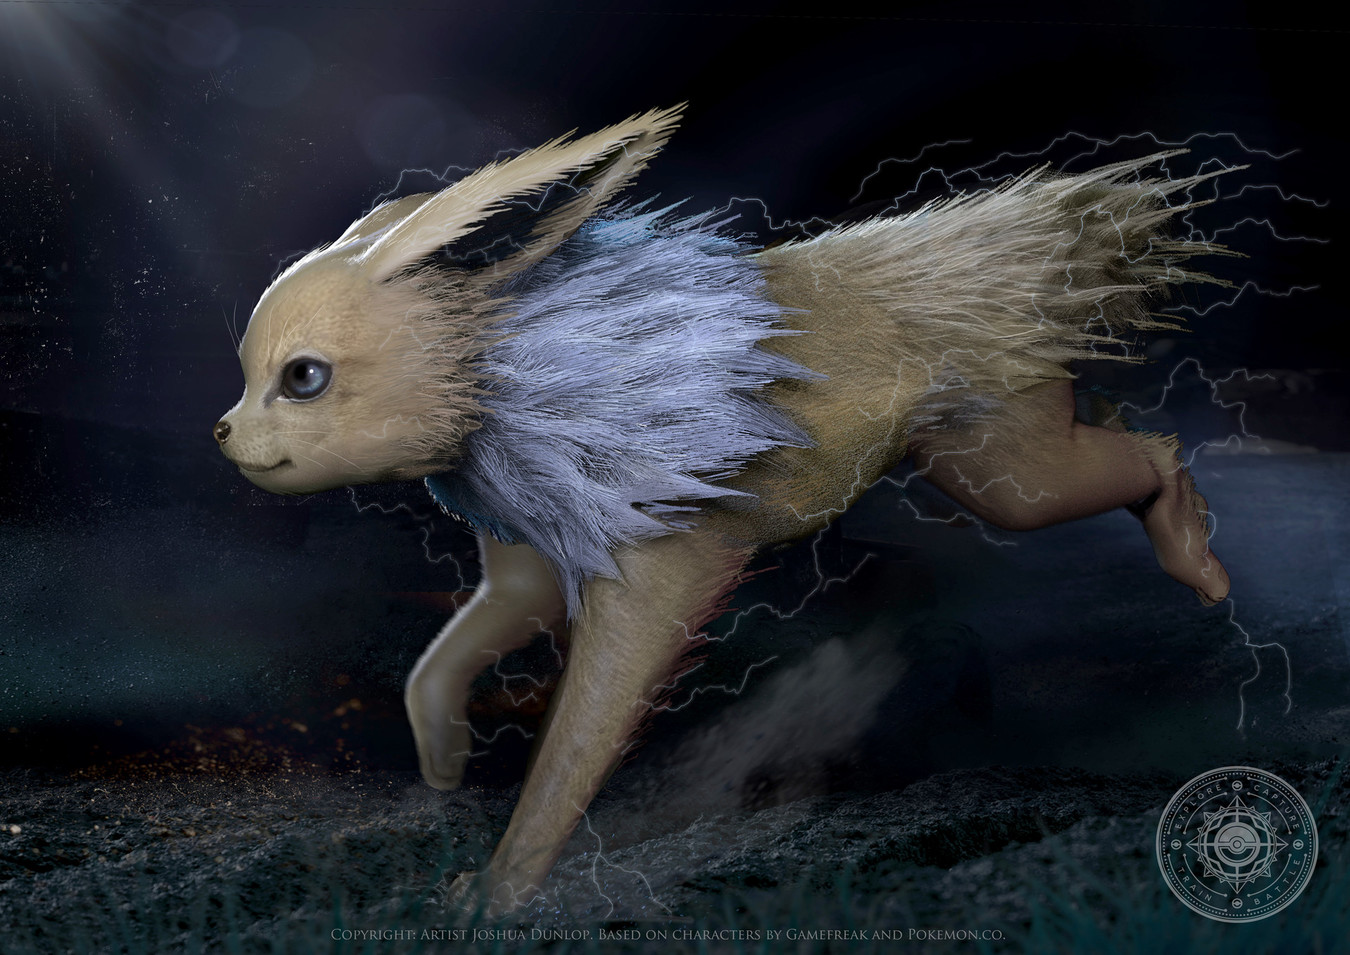 Artista cria ilustrações mostrando Pokémons reais - Jornal Joca